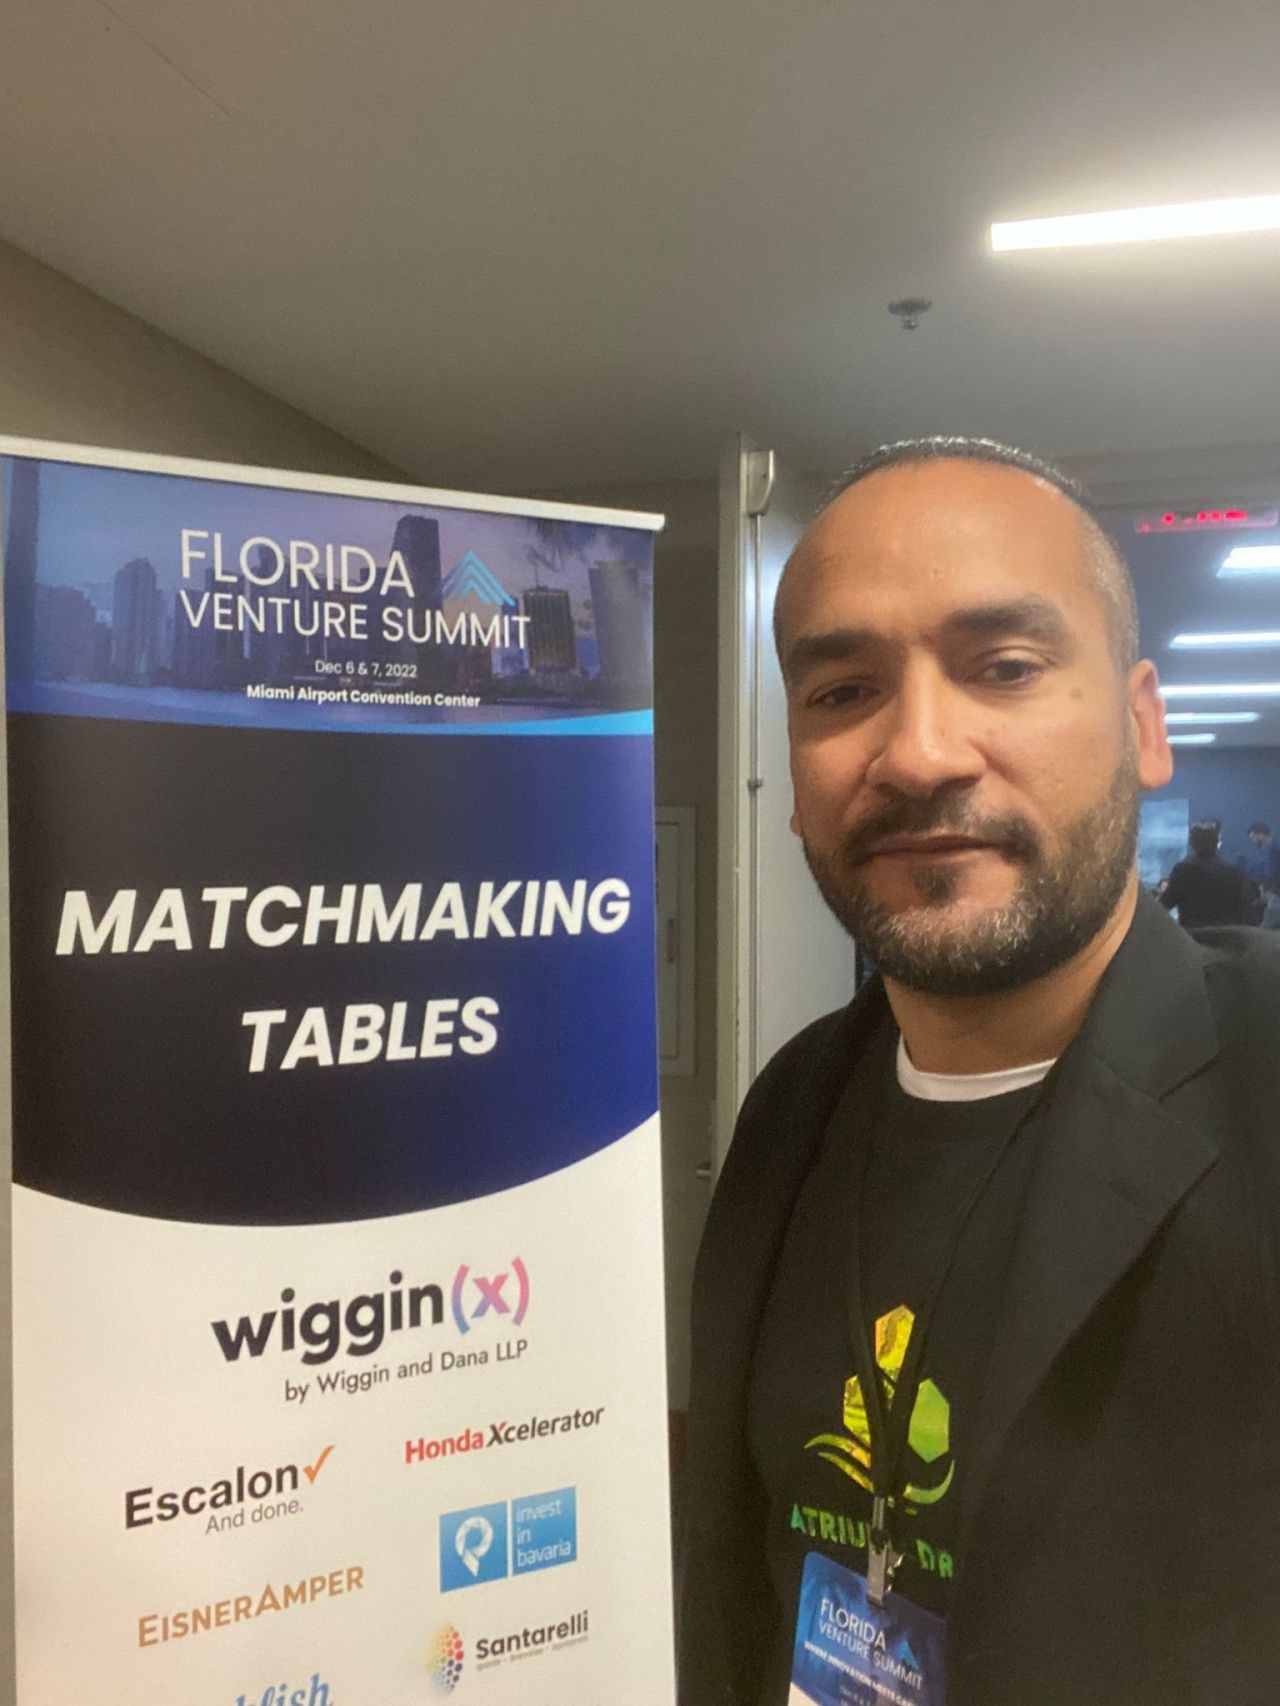 ATRIUM CDR joins Venture Summit in Florida